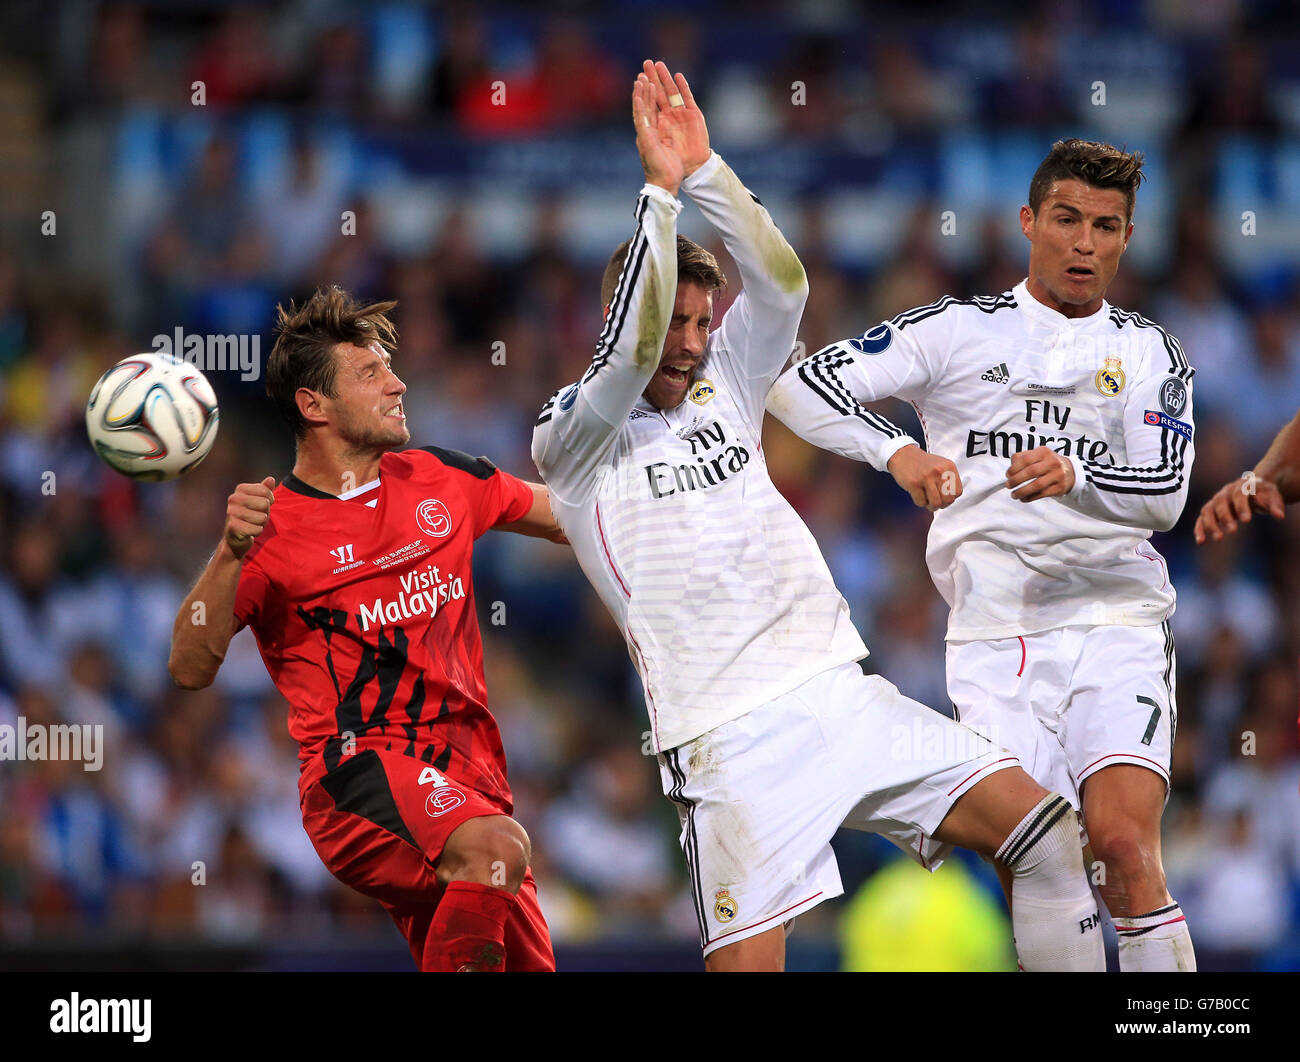 Fußball - UEFA Super Cup 2014 - Sevilla / Real Madrid - Cardiff City Stadium. Sevillas Grzegorz Krychowiak (links) und Sergio Ramos und Cristiano Ronaldo von Real Madrid kämpfen um den Ball Stockfoto